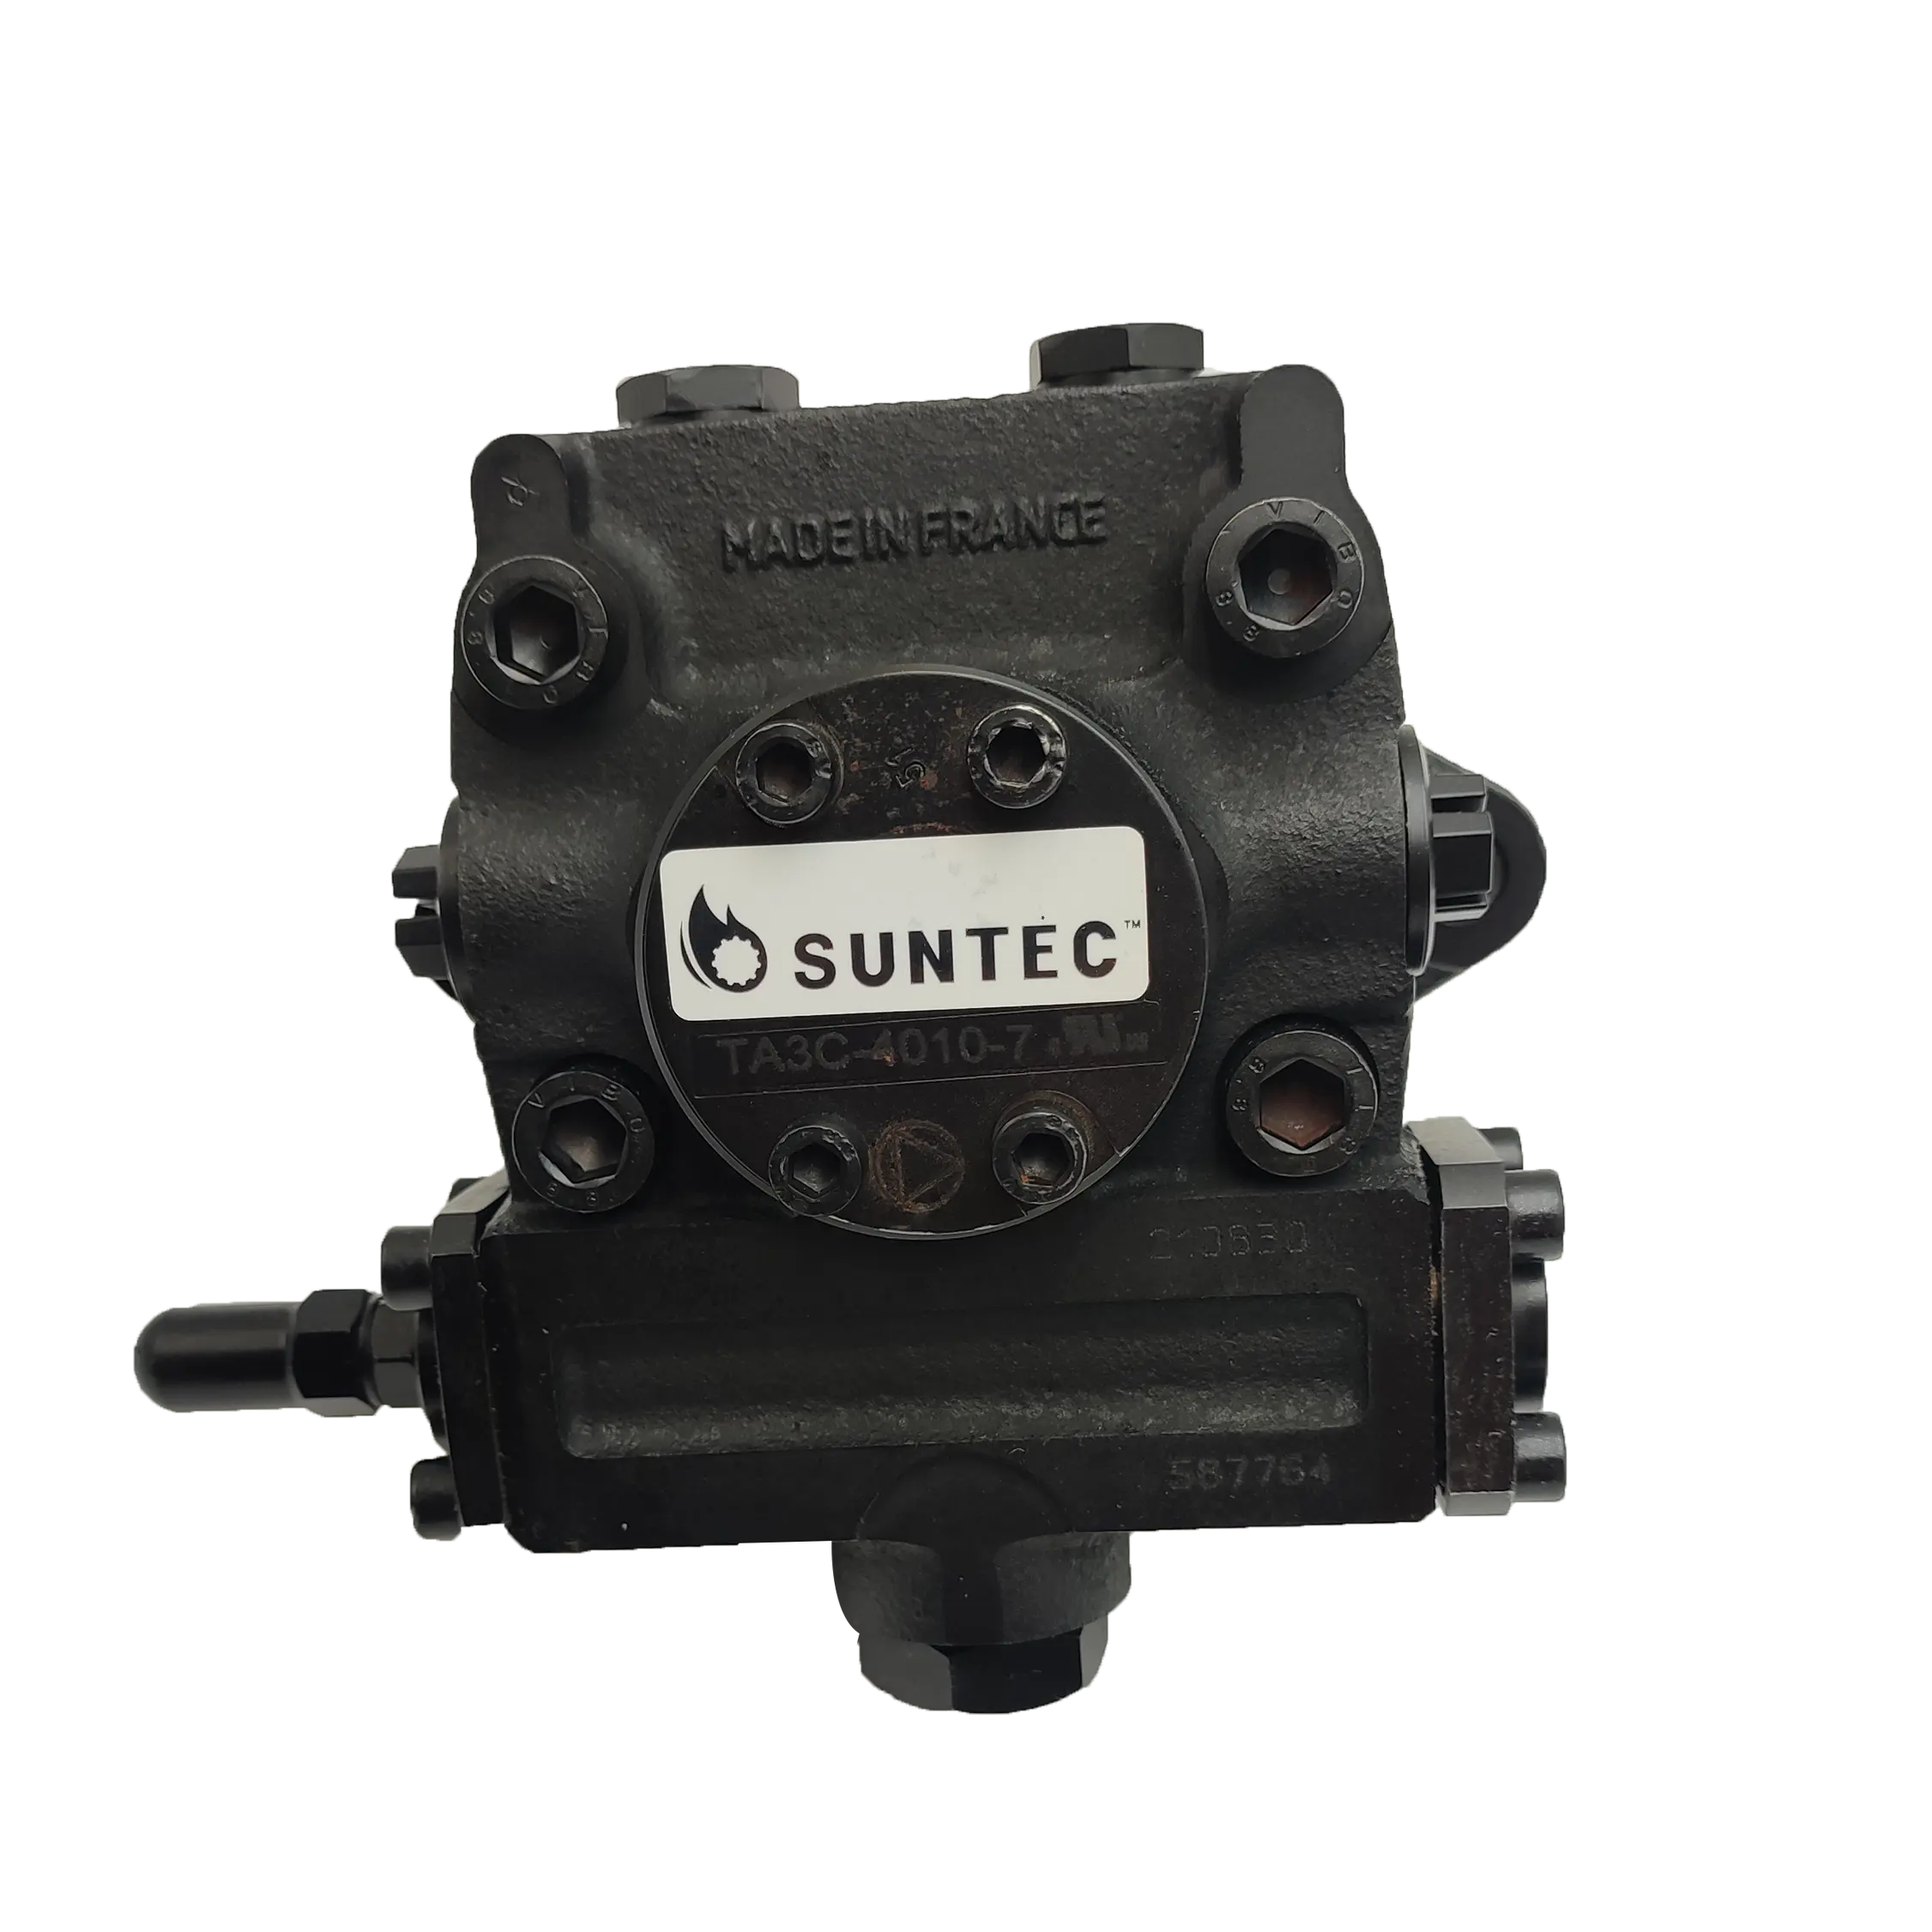 Fabrik preis Frankreich Original Suntec TA3C 7 Öl kraftstoff pumpen für die industrielle Verbrennung